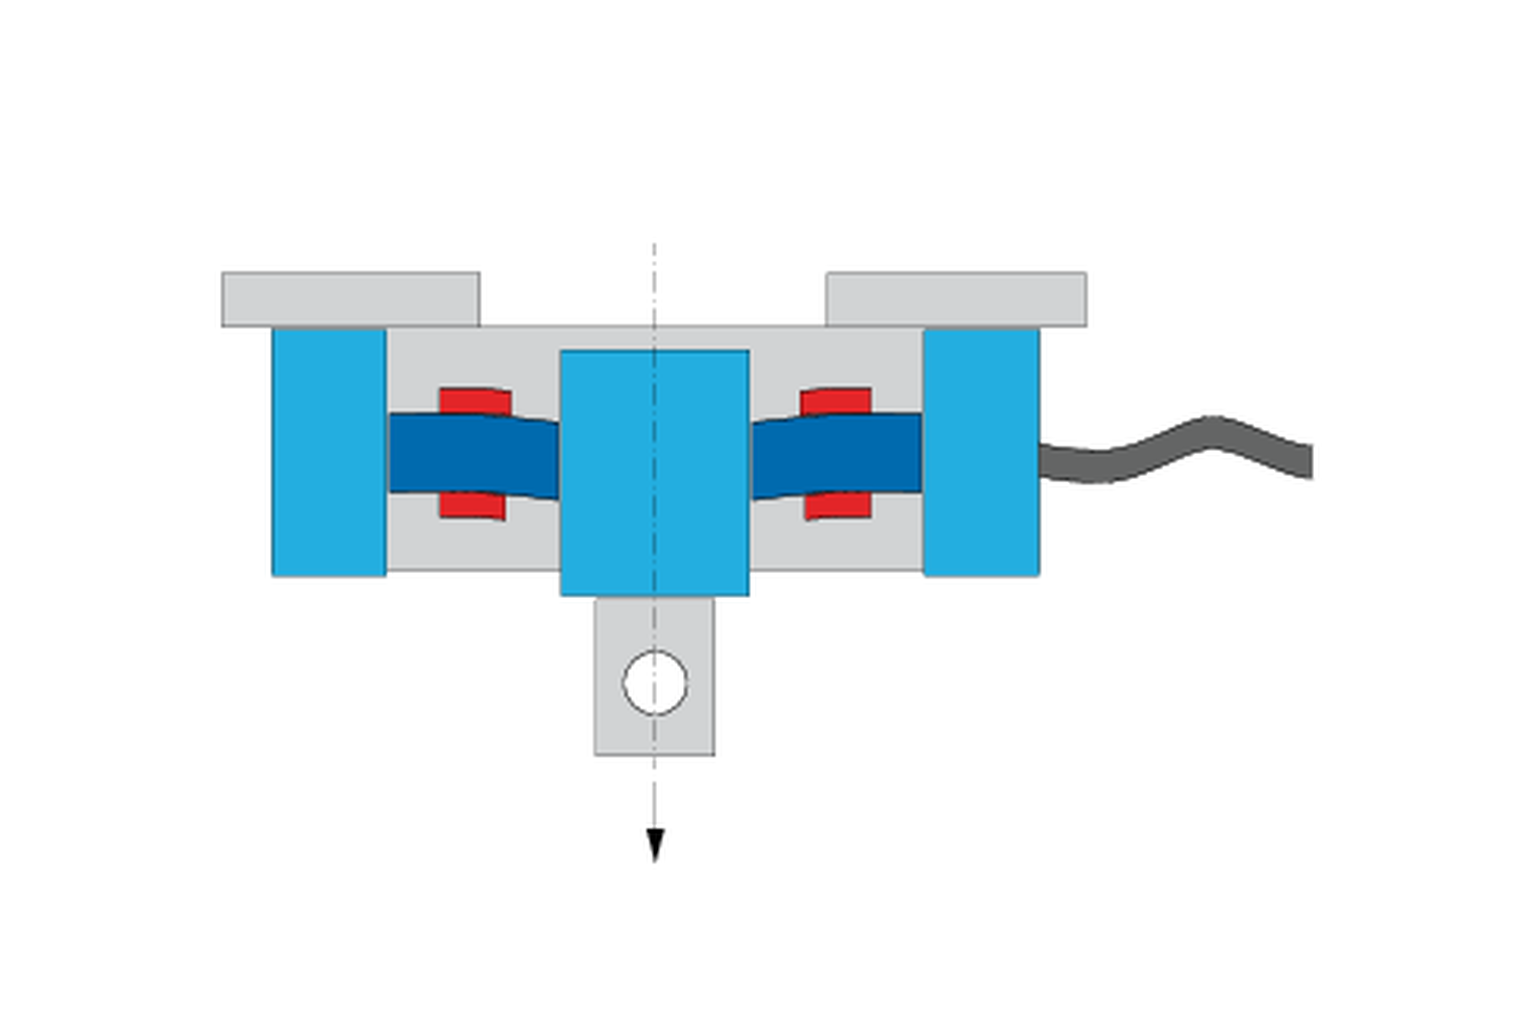 Как функционирует датчик силы? Графика, динамометр с тензорезисторами (DMS) в растянутом и сжатом состоянии